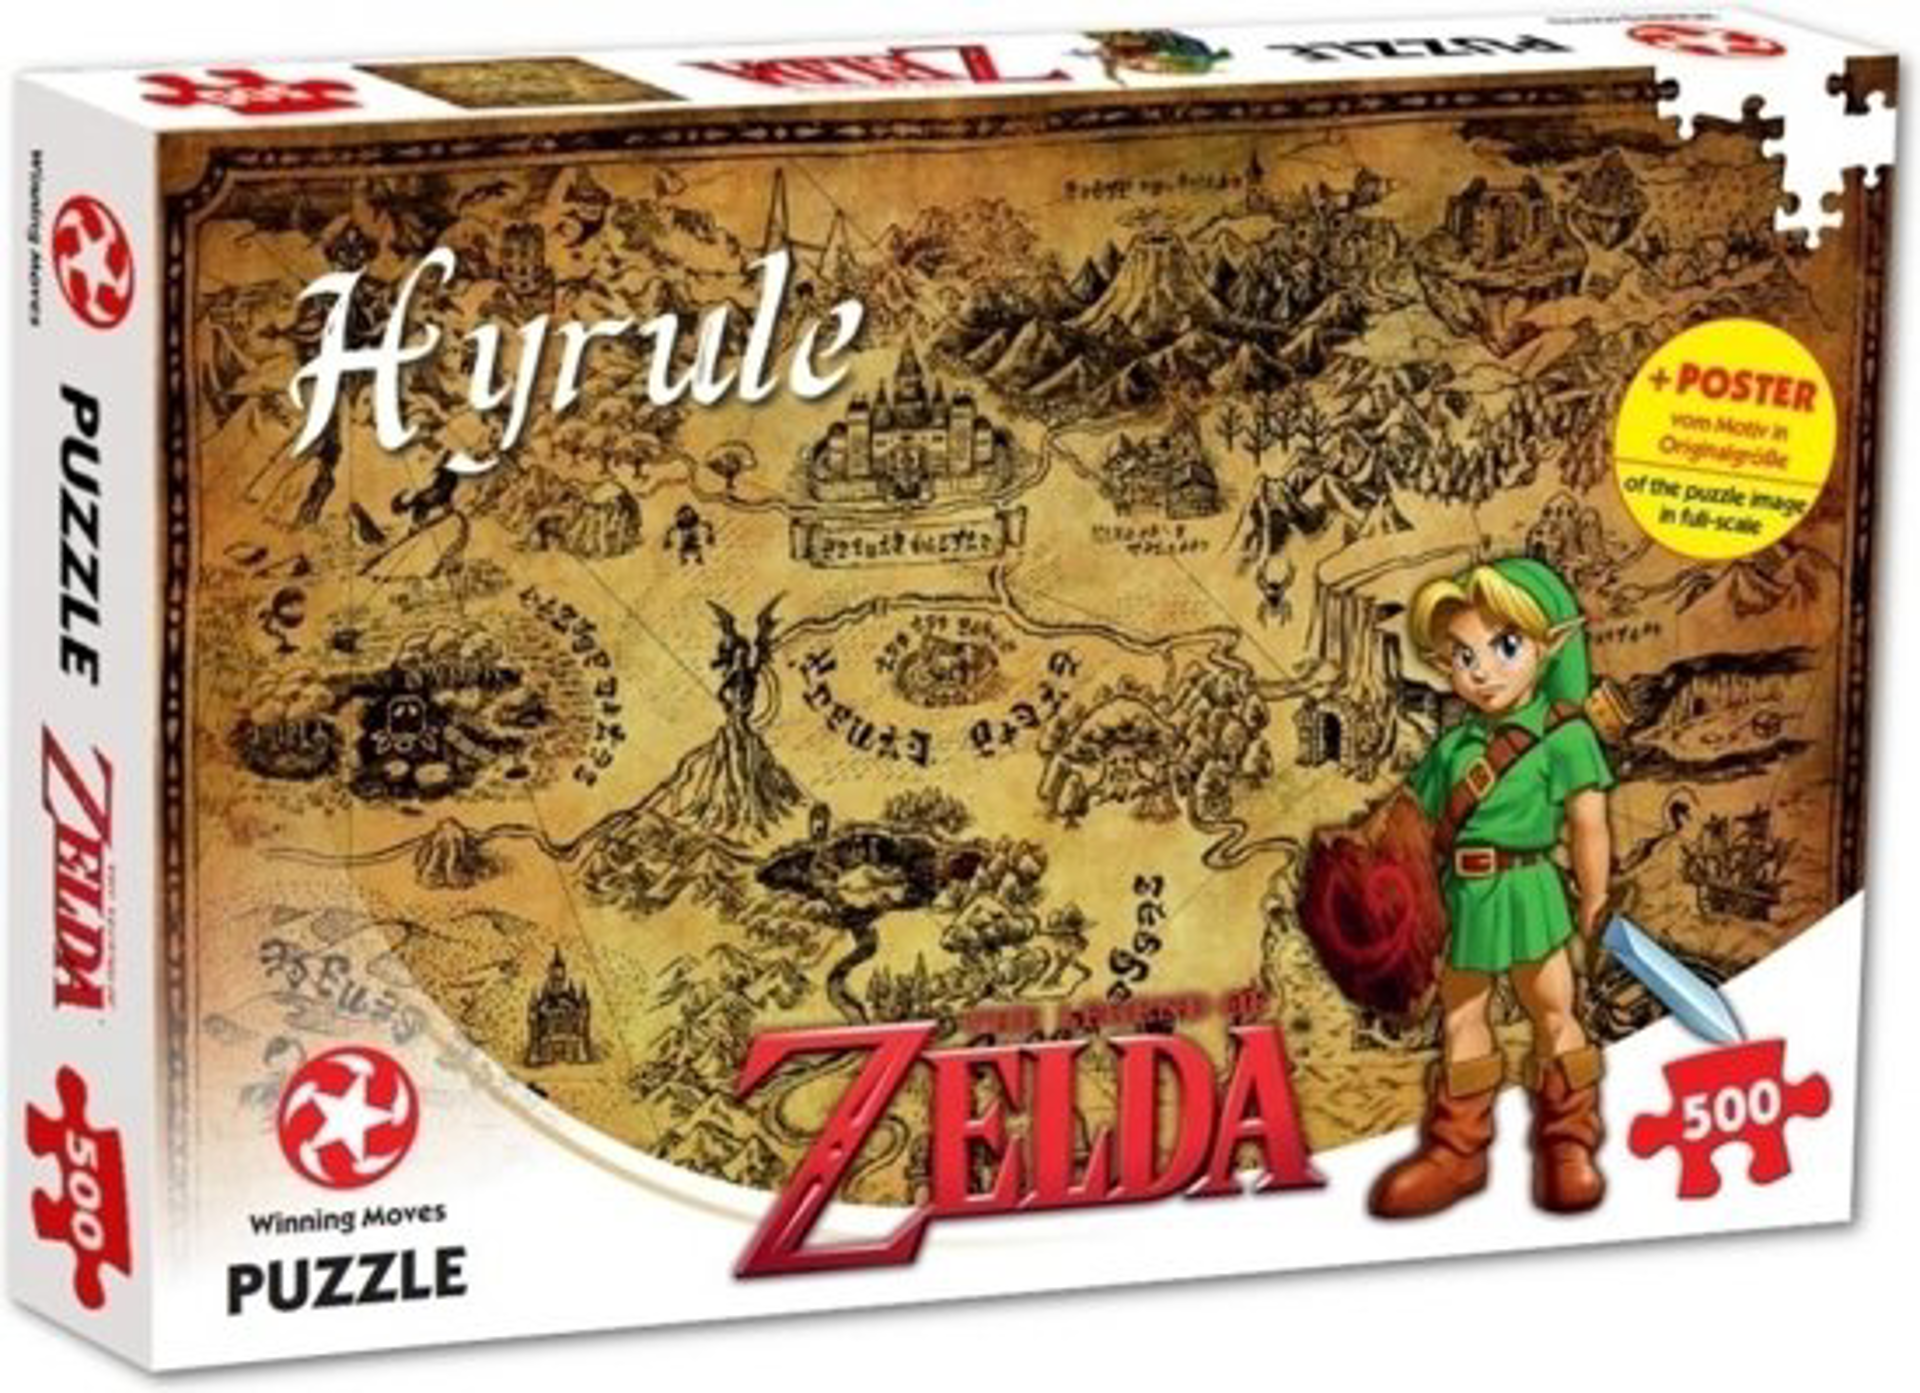 Zelda - Puzzle Hyrule 500 pcs